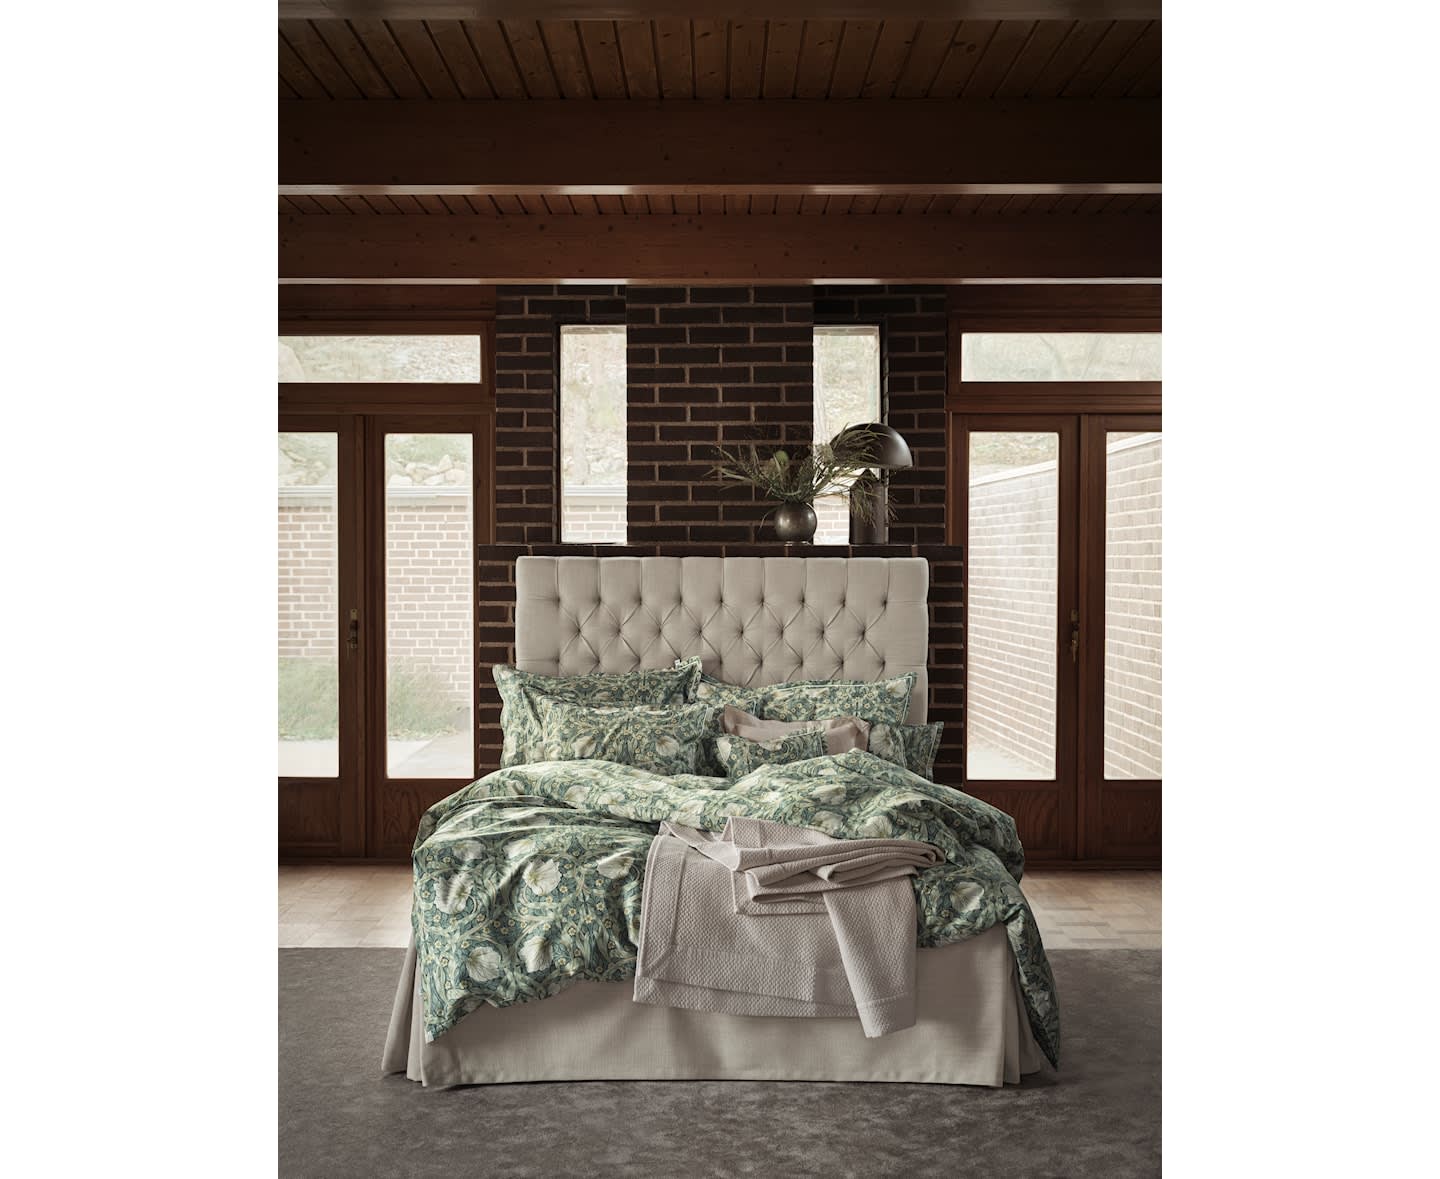 Mille Notti Pimpernel Bettbezug Grün Einfach